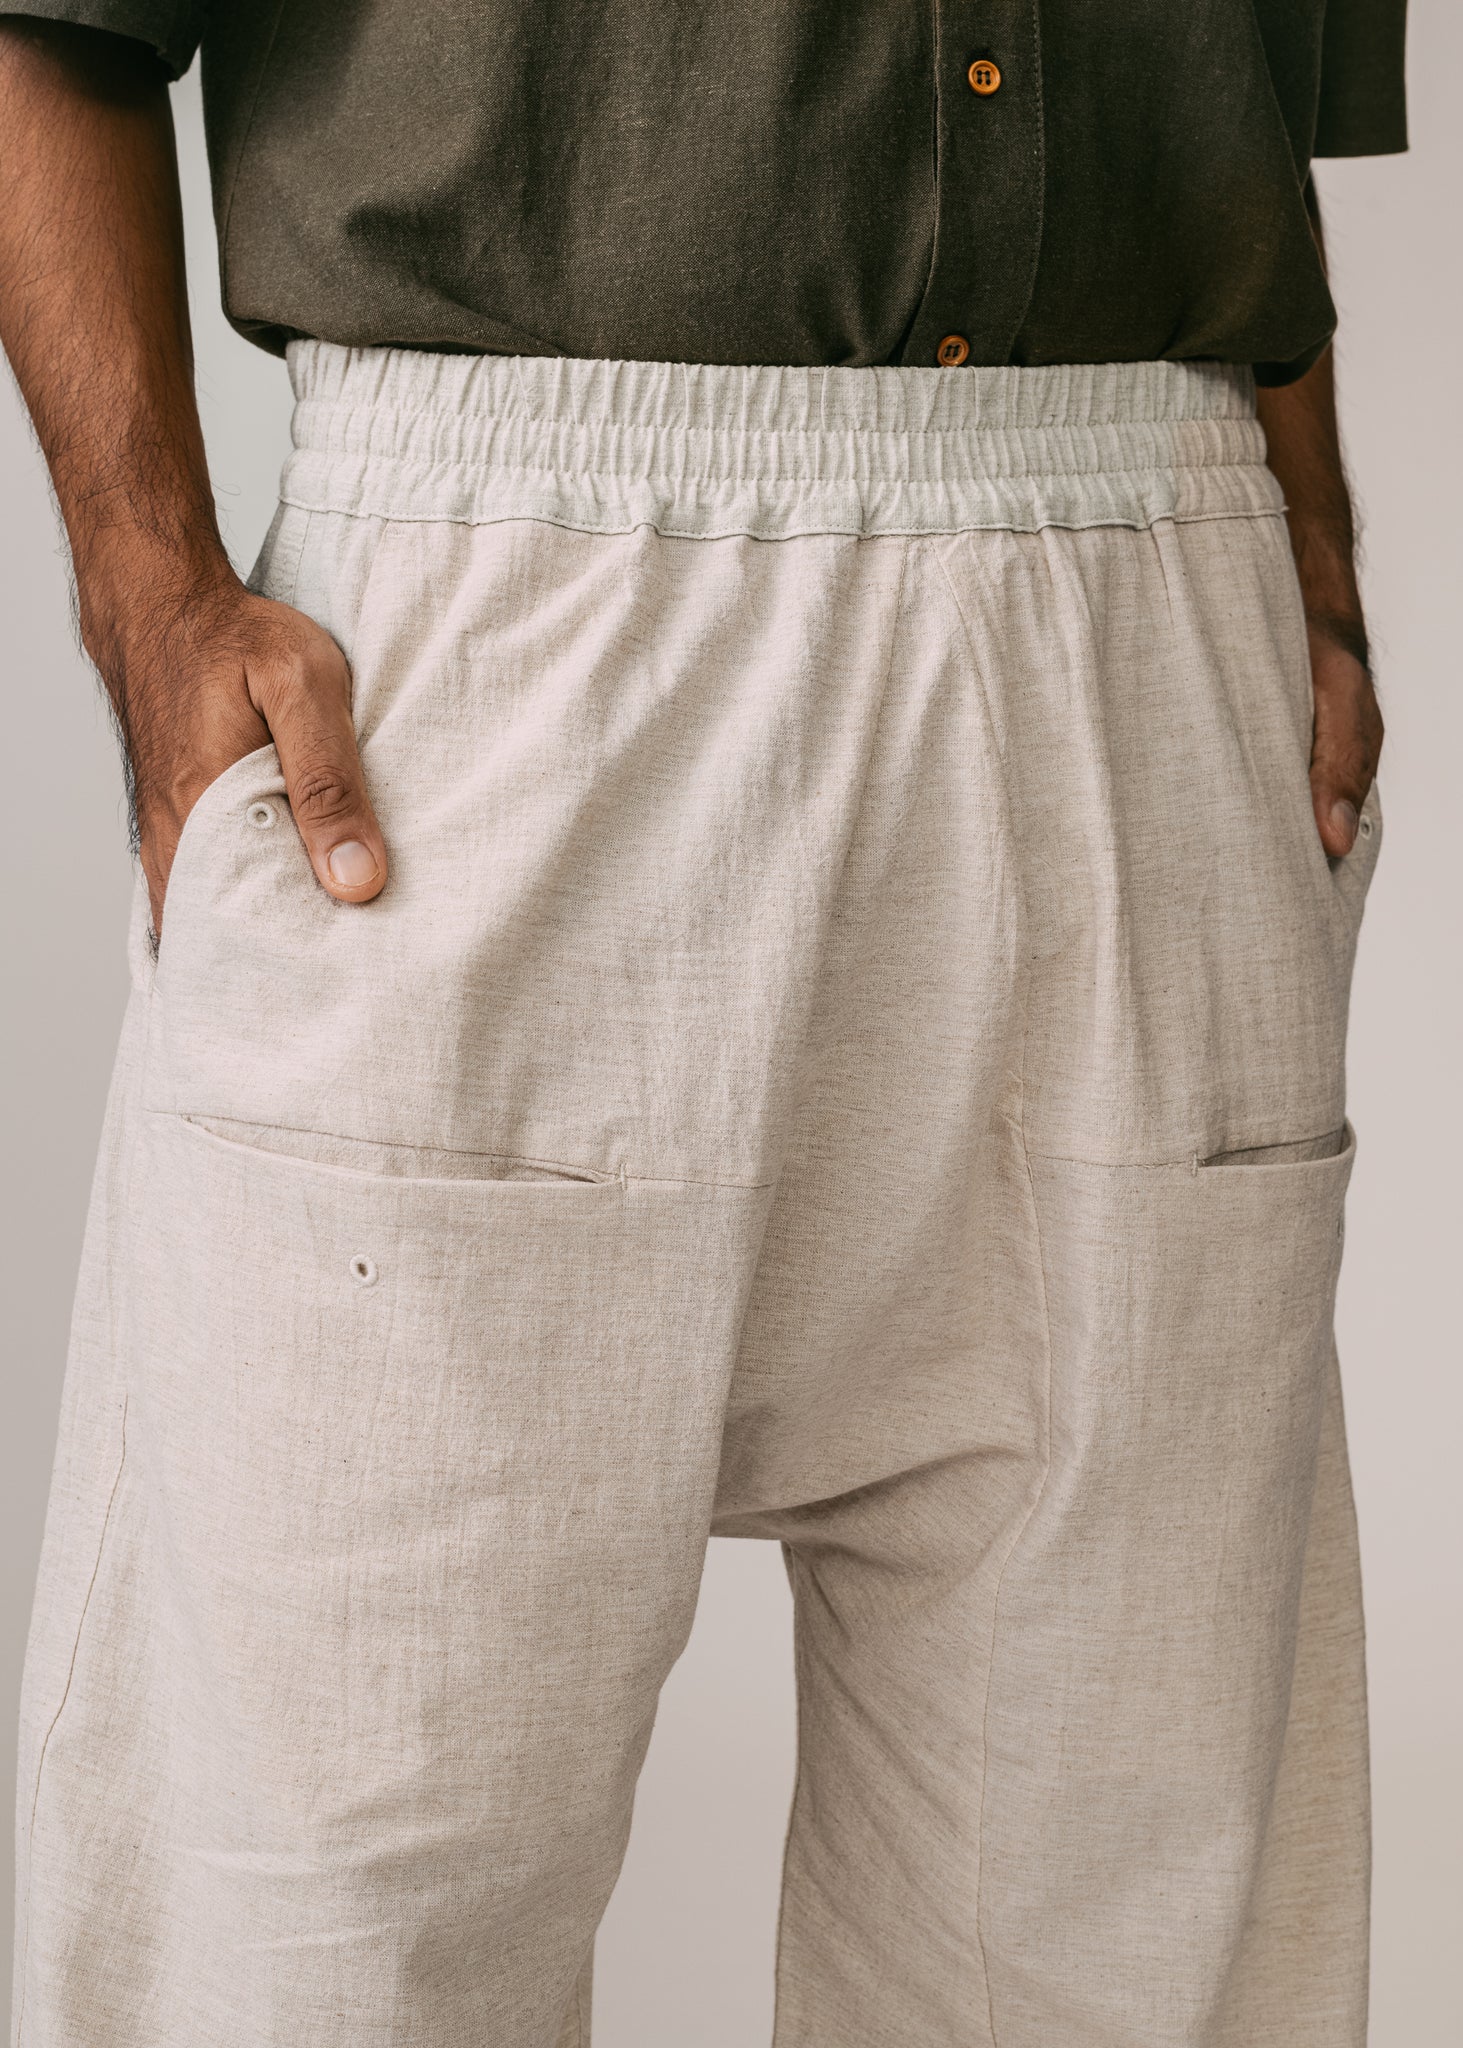 Unisex: Tahan Panelled Pants (Sand)